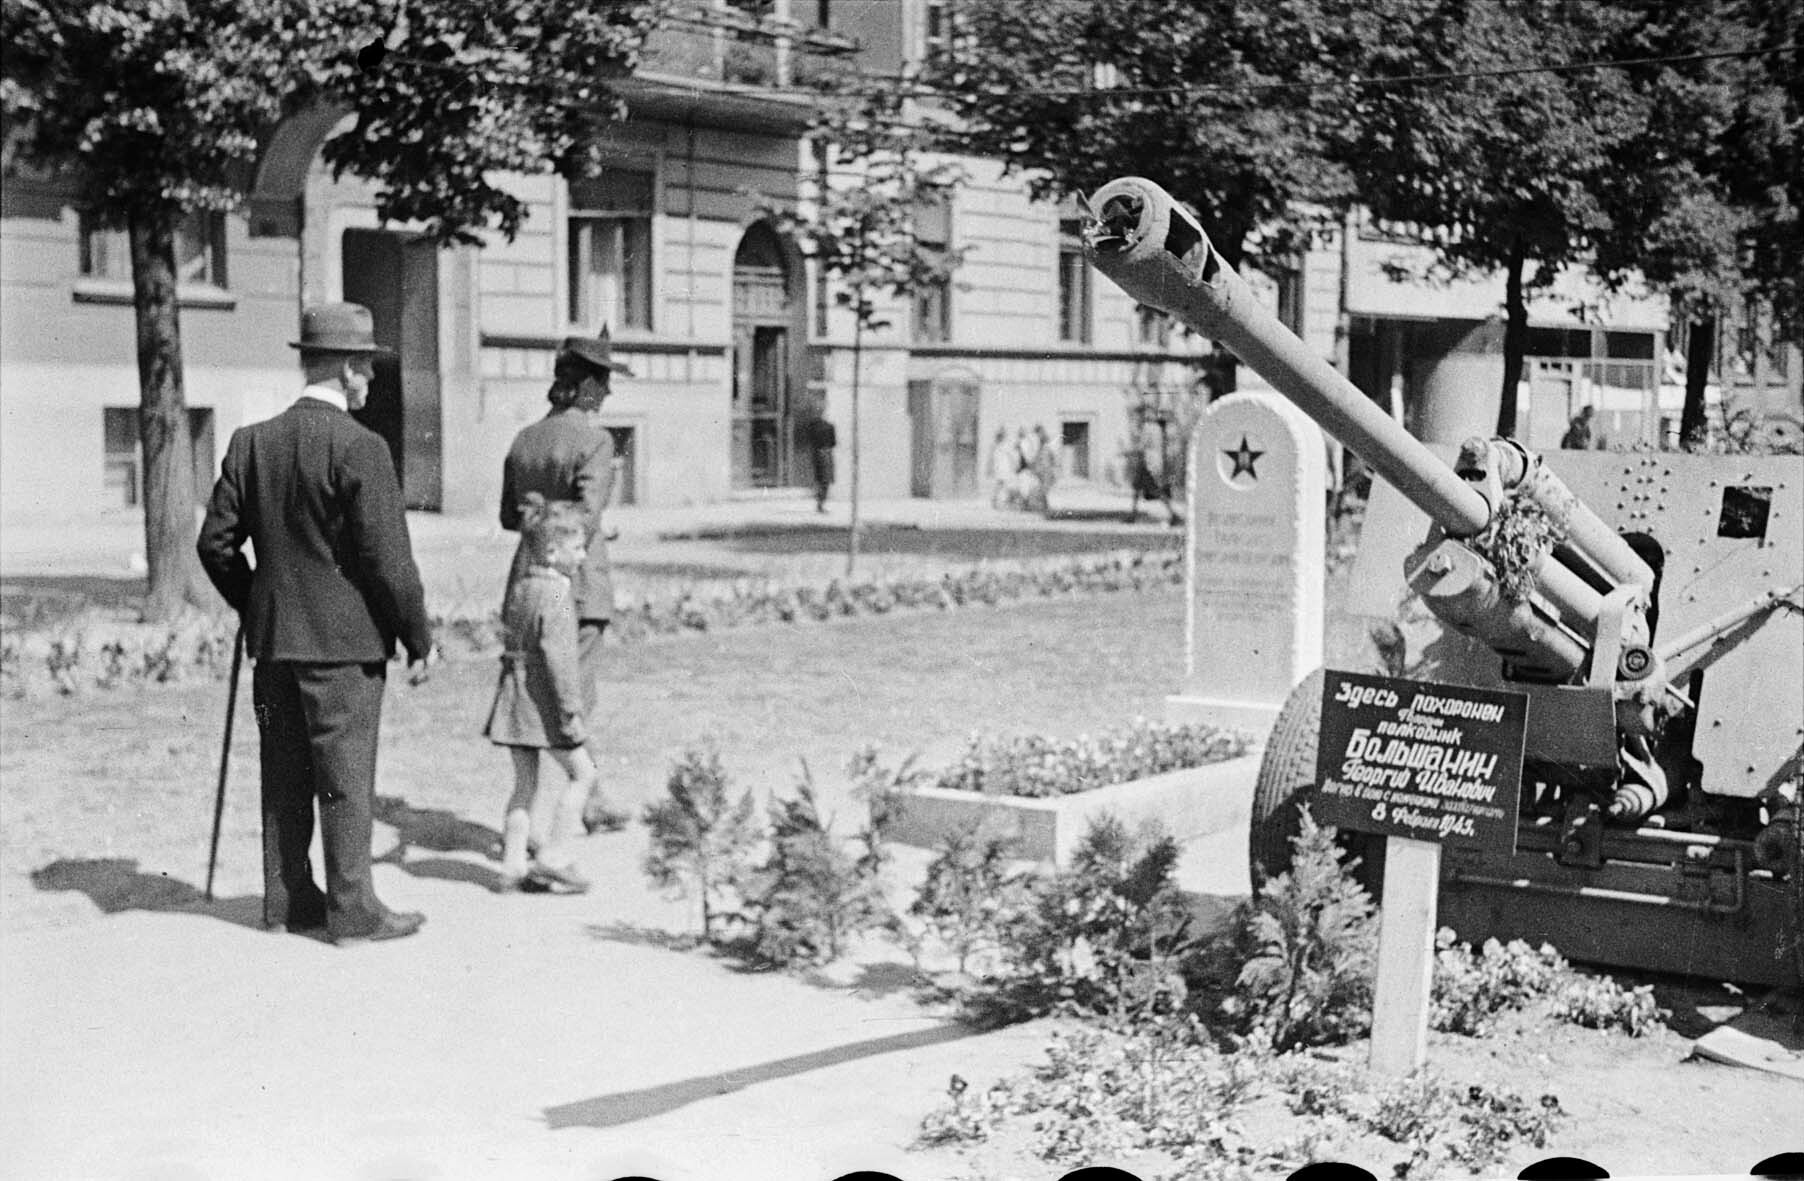 Gräber sowjetischer Soldaten auf dem Bürgersteig in einer Straße von Bydgoszcz, vermutliche Mitte Mai 1945 (Museum Berlin-Karlshorst RR-P)